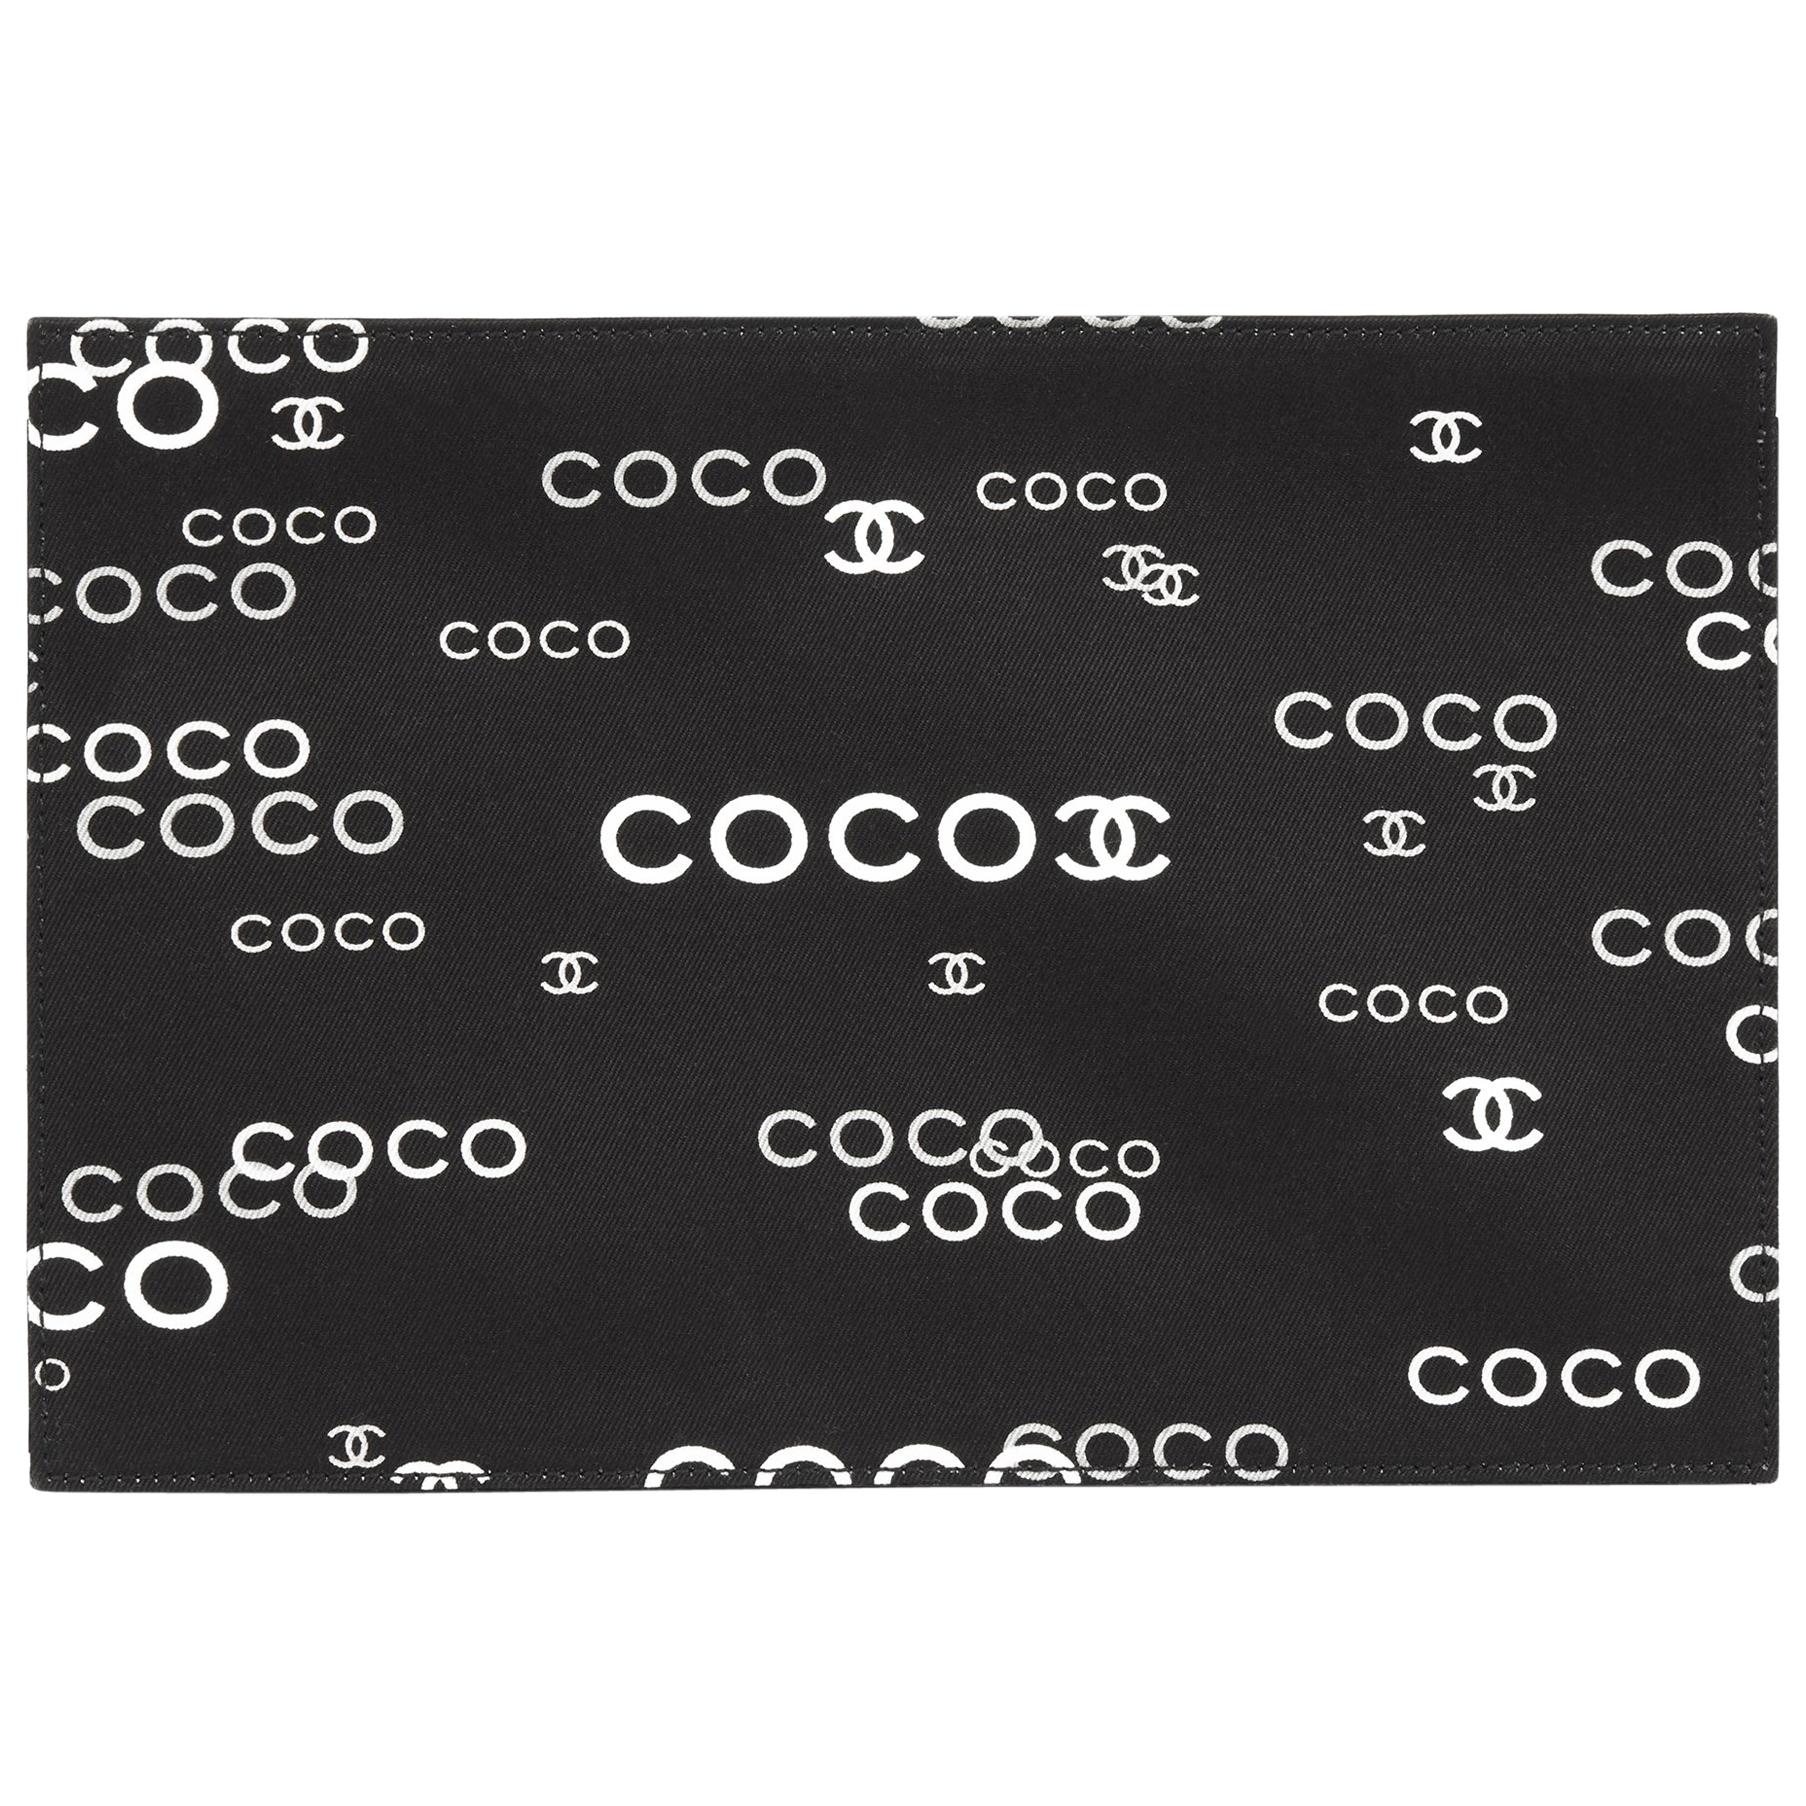 2002 Chanel Black Canvas Coco Pouch